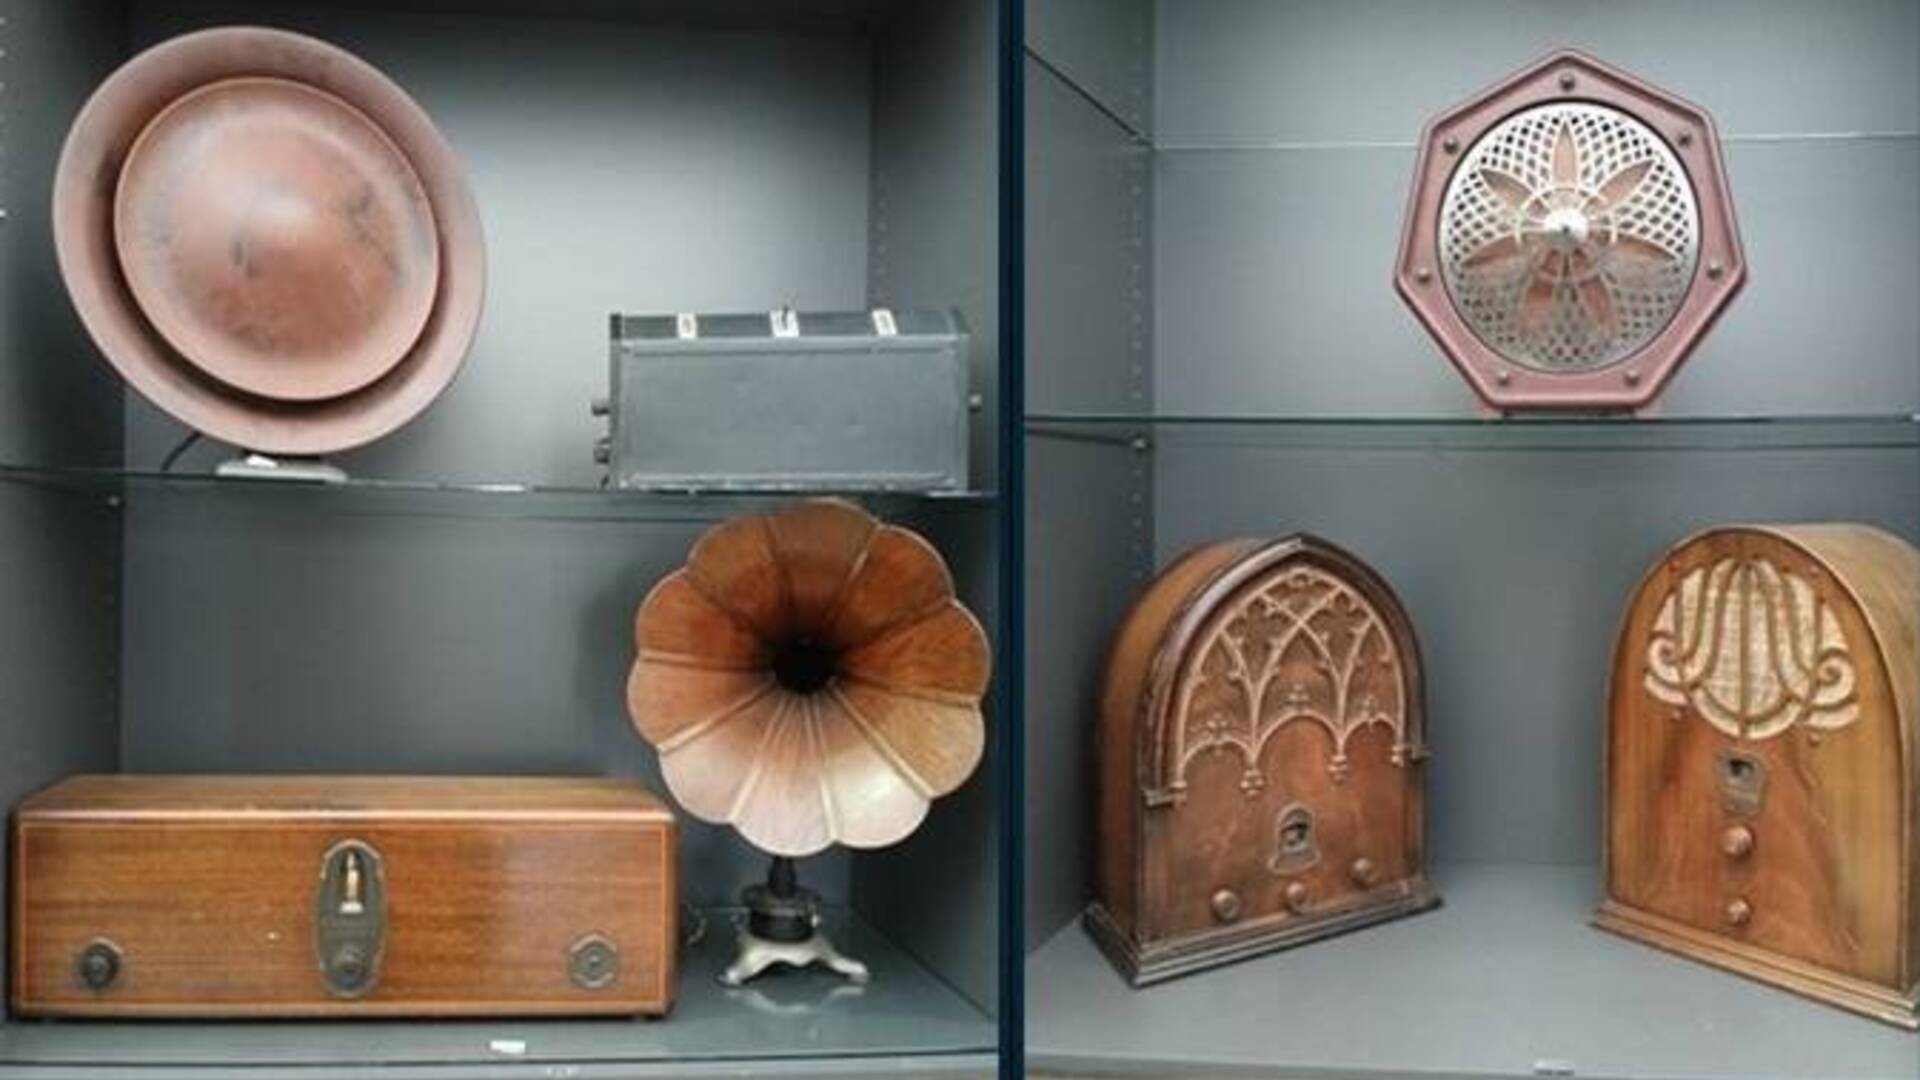 Le radio del Mils di Saronno in mostra all’Università Bicocca. Oggi l’inaugurazione con Linus